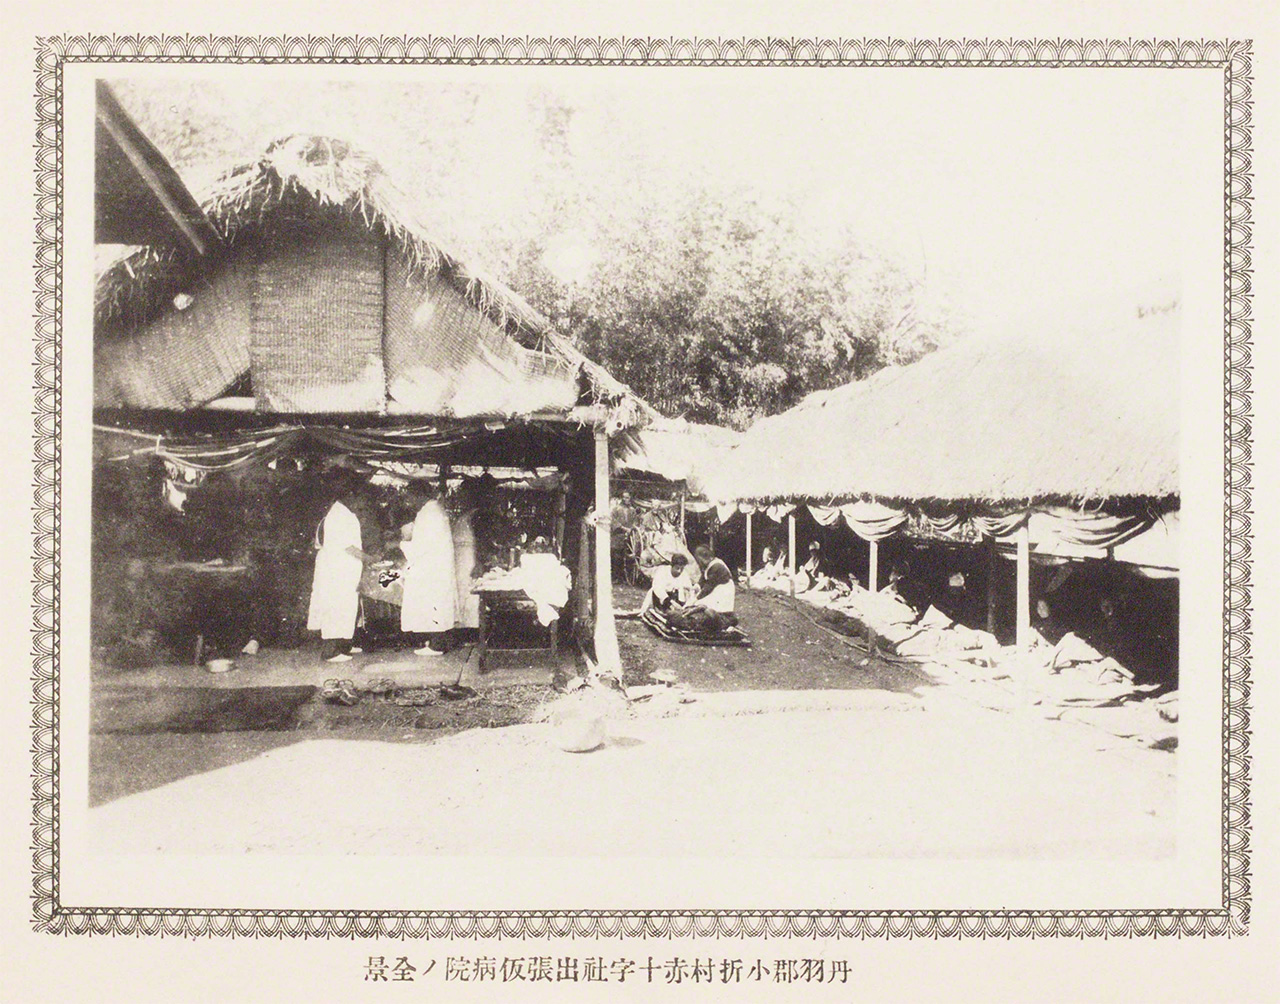 صور فوتوغرافية توثق جهود الإغاثة التي قامت بها جمعية الصليب الأحمر اليابانية بعد زلزال نوبي عام 1891.